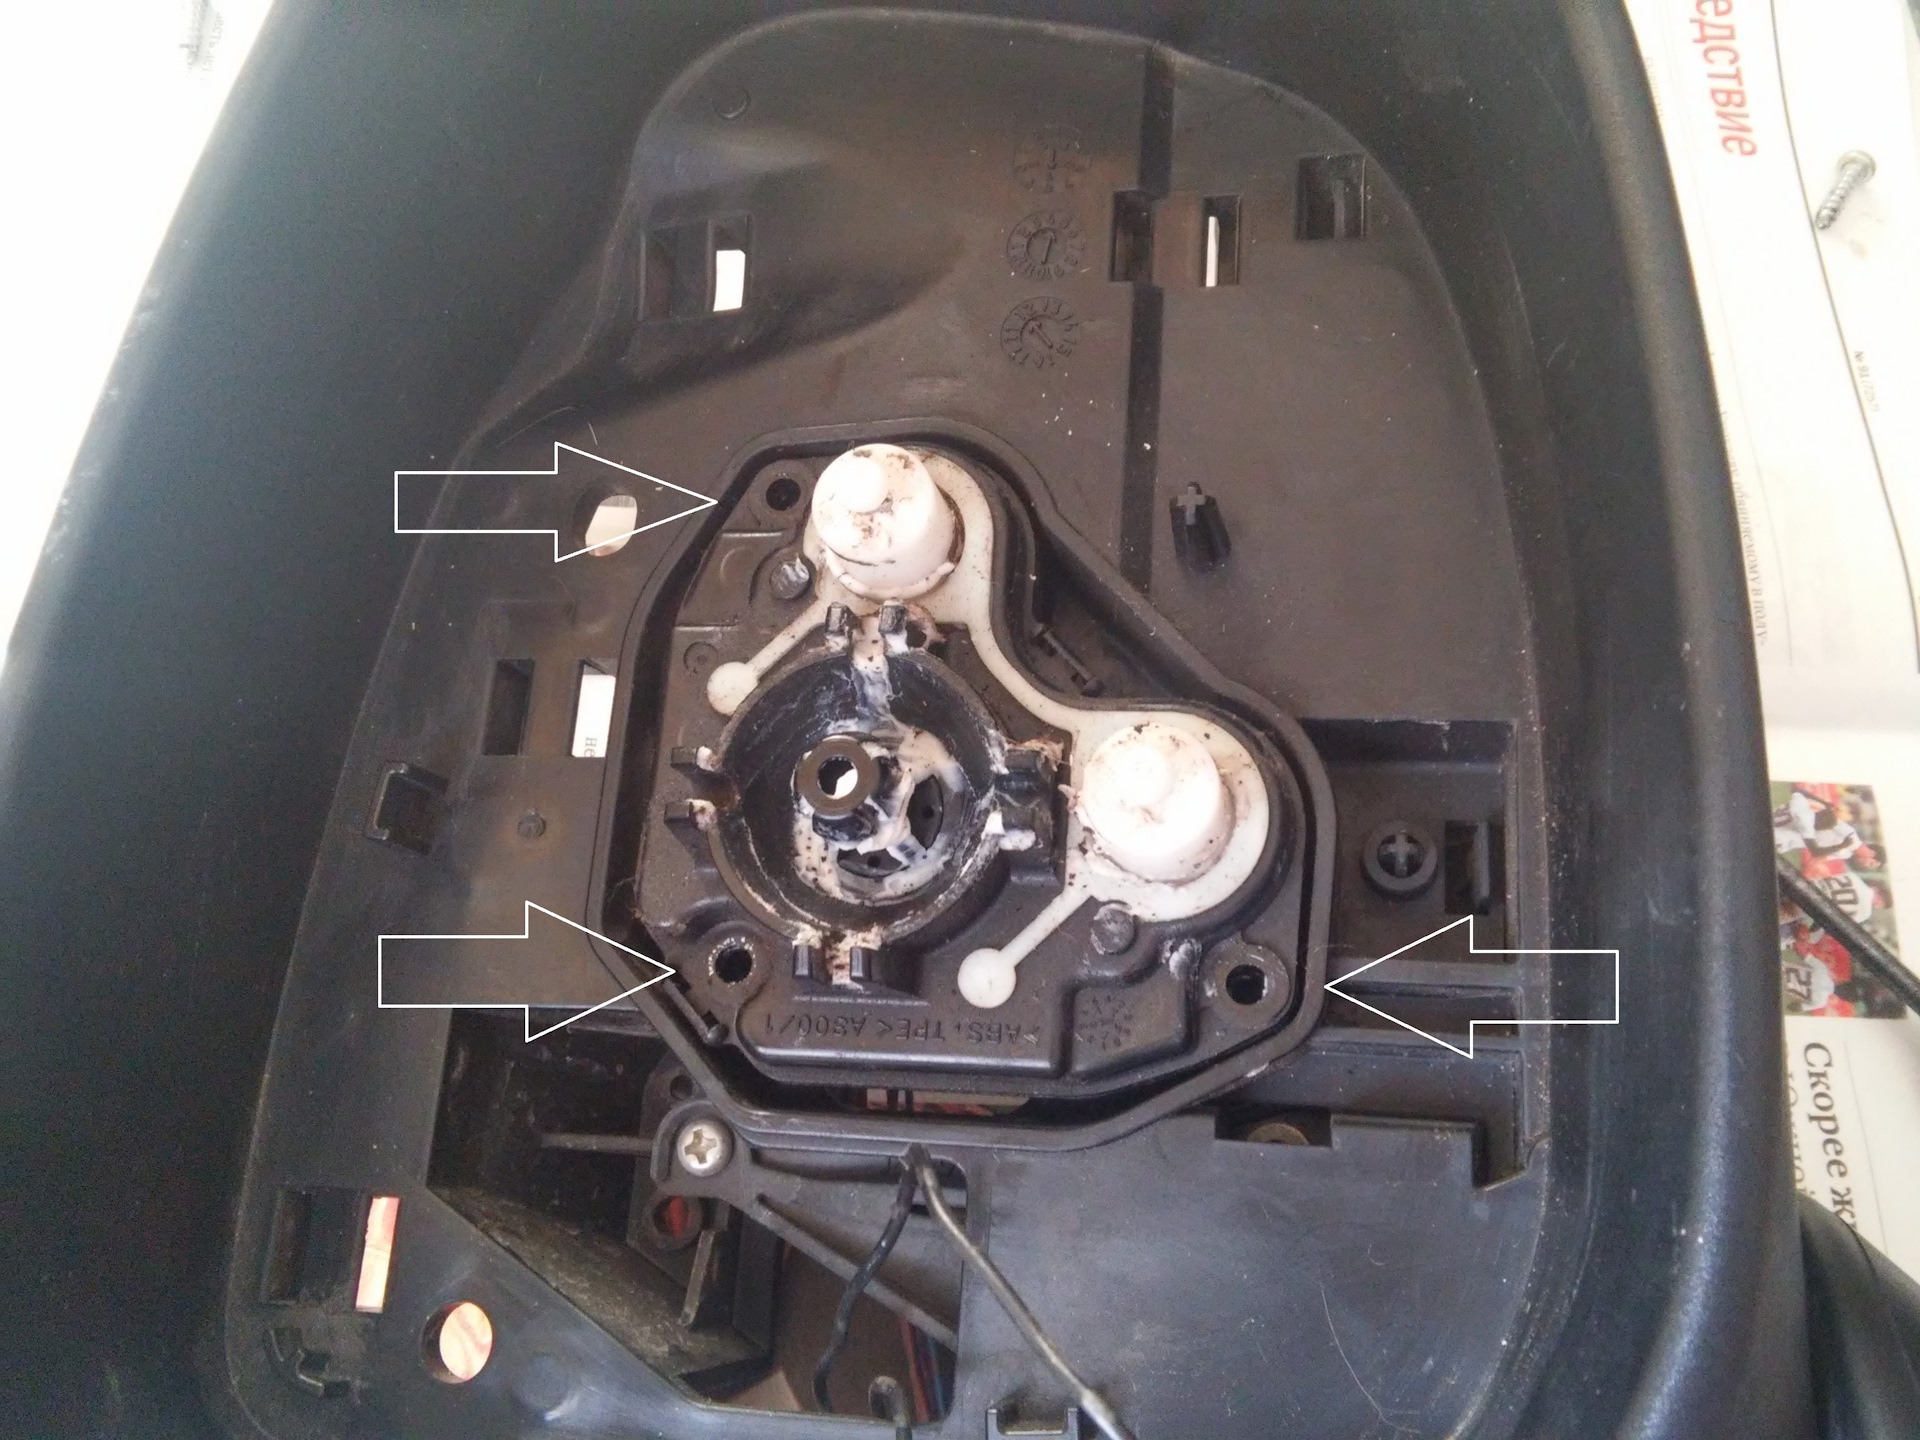 Складывание зеркал мазда сх 5. Привод зеркала Мазда СХ 5. Механизм складывания зеркал Мазда СЧ 5 2014 артикул. Механизм складывания бокового зеркала Mazda CX-5. Ремкомплект привода зеркала cx5.